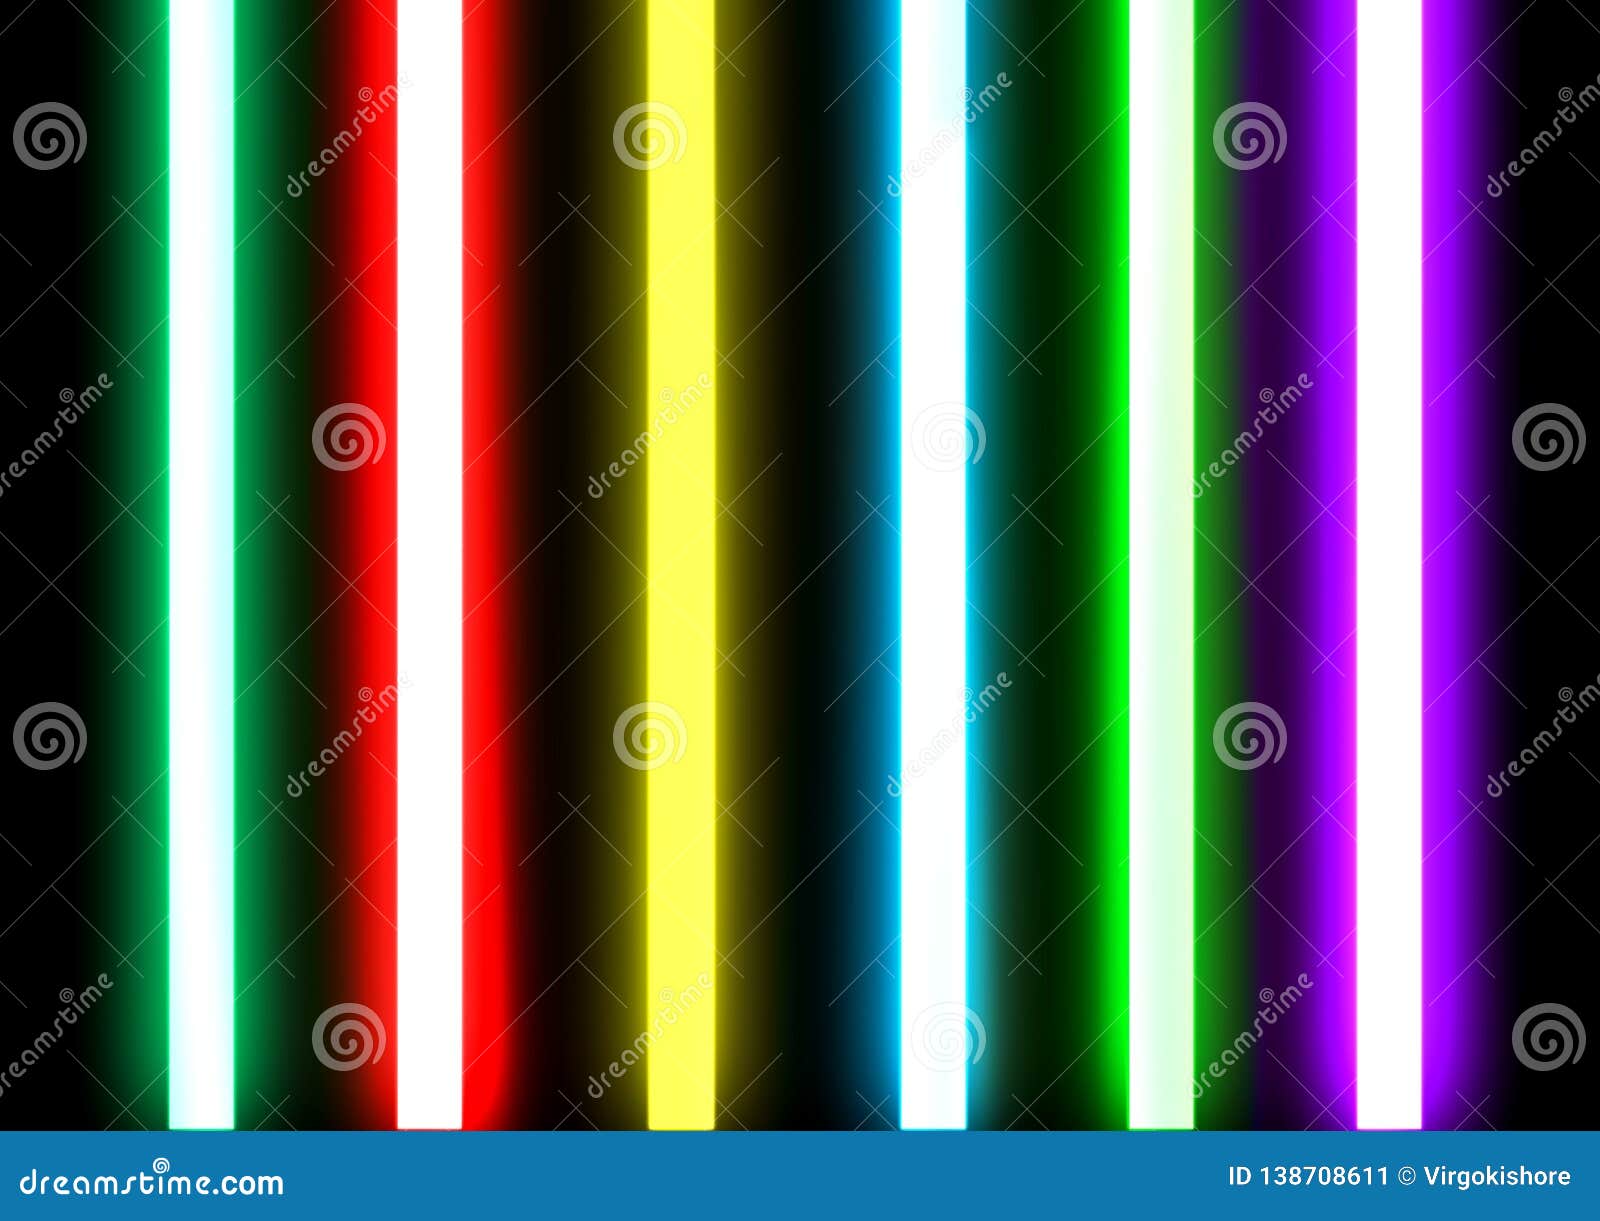 Los Tubos De Iluminación De Neón Sellaron Vidrio Imagen de archivo - Imagen de tubo, brillantemente: 138708611